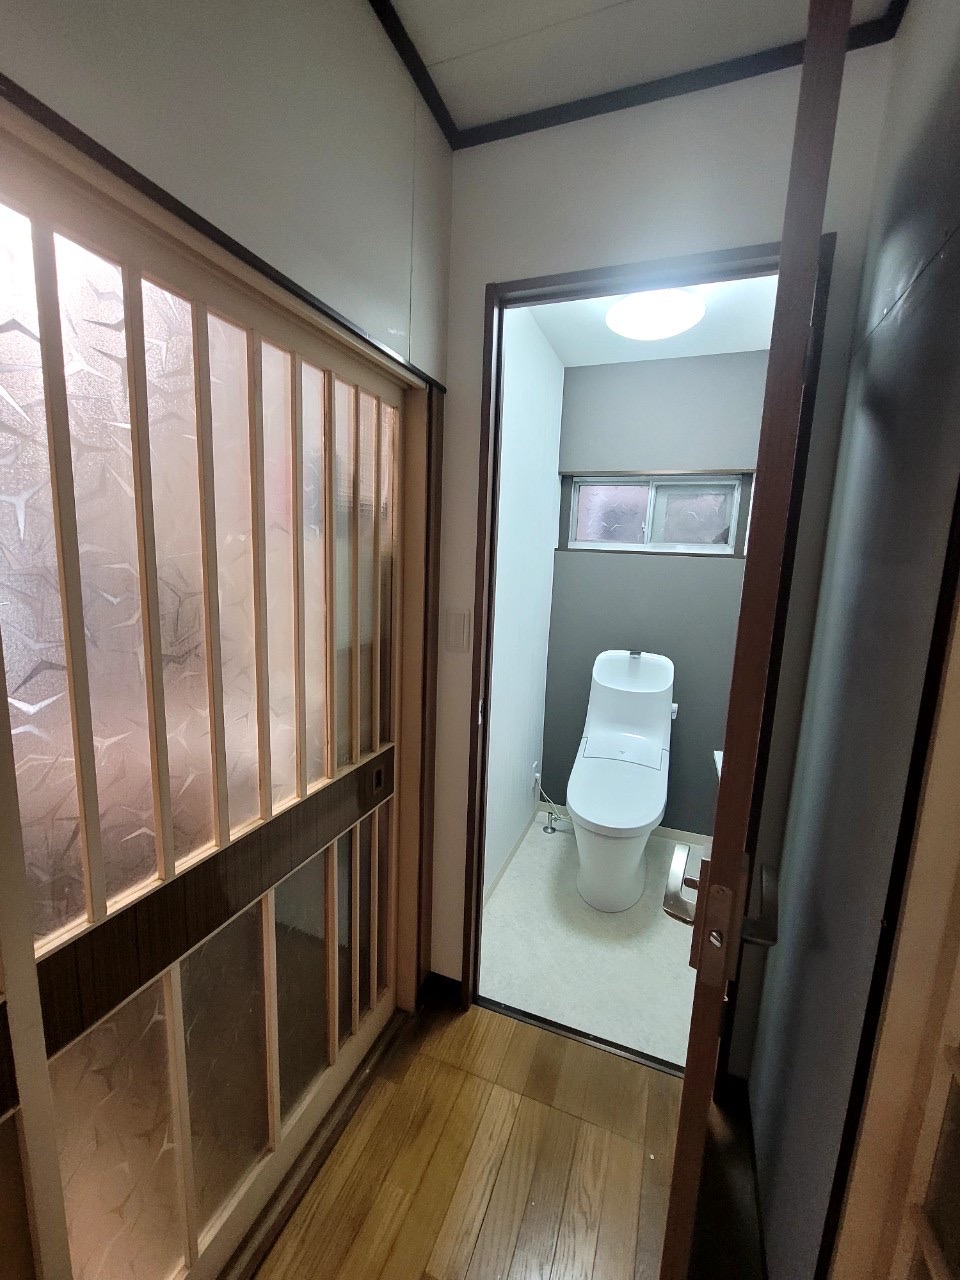 名古屋市中川区 和式トイレ洋式トイレ改修工事 光ホームさんのチーム最高でした 画像